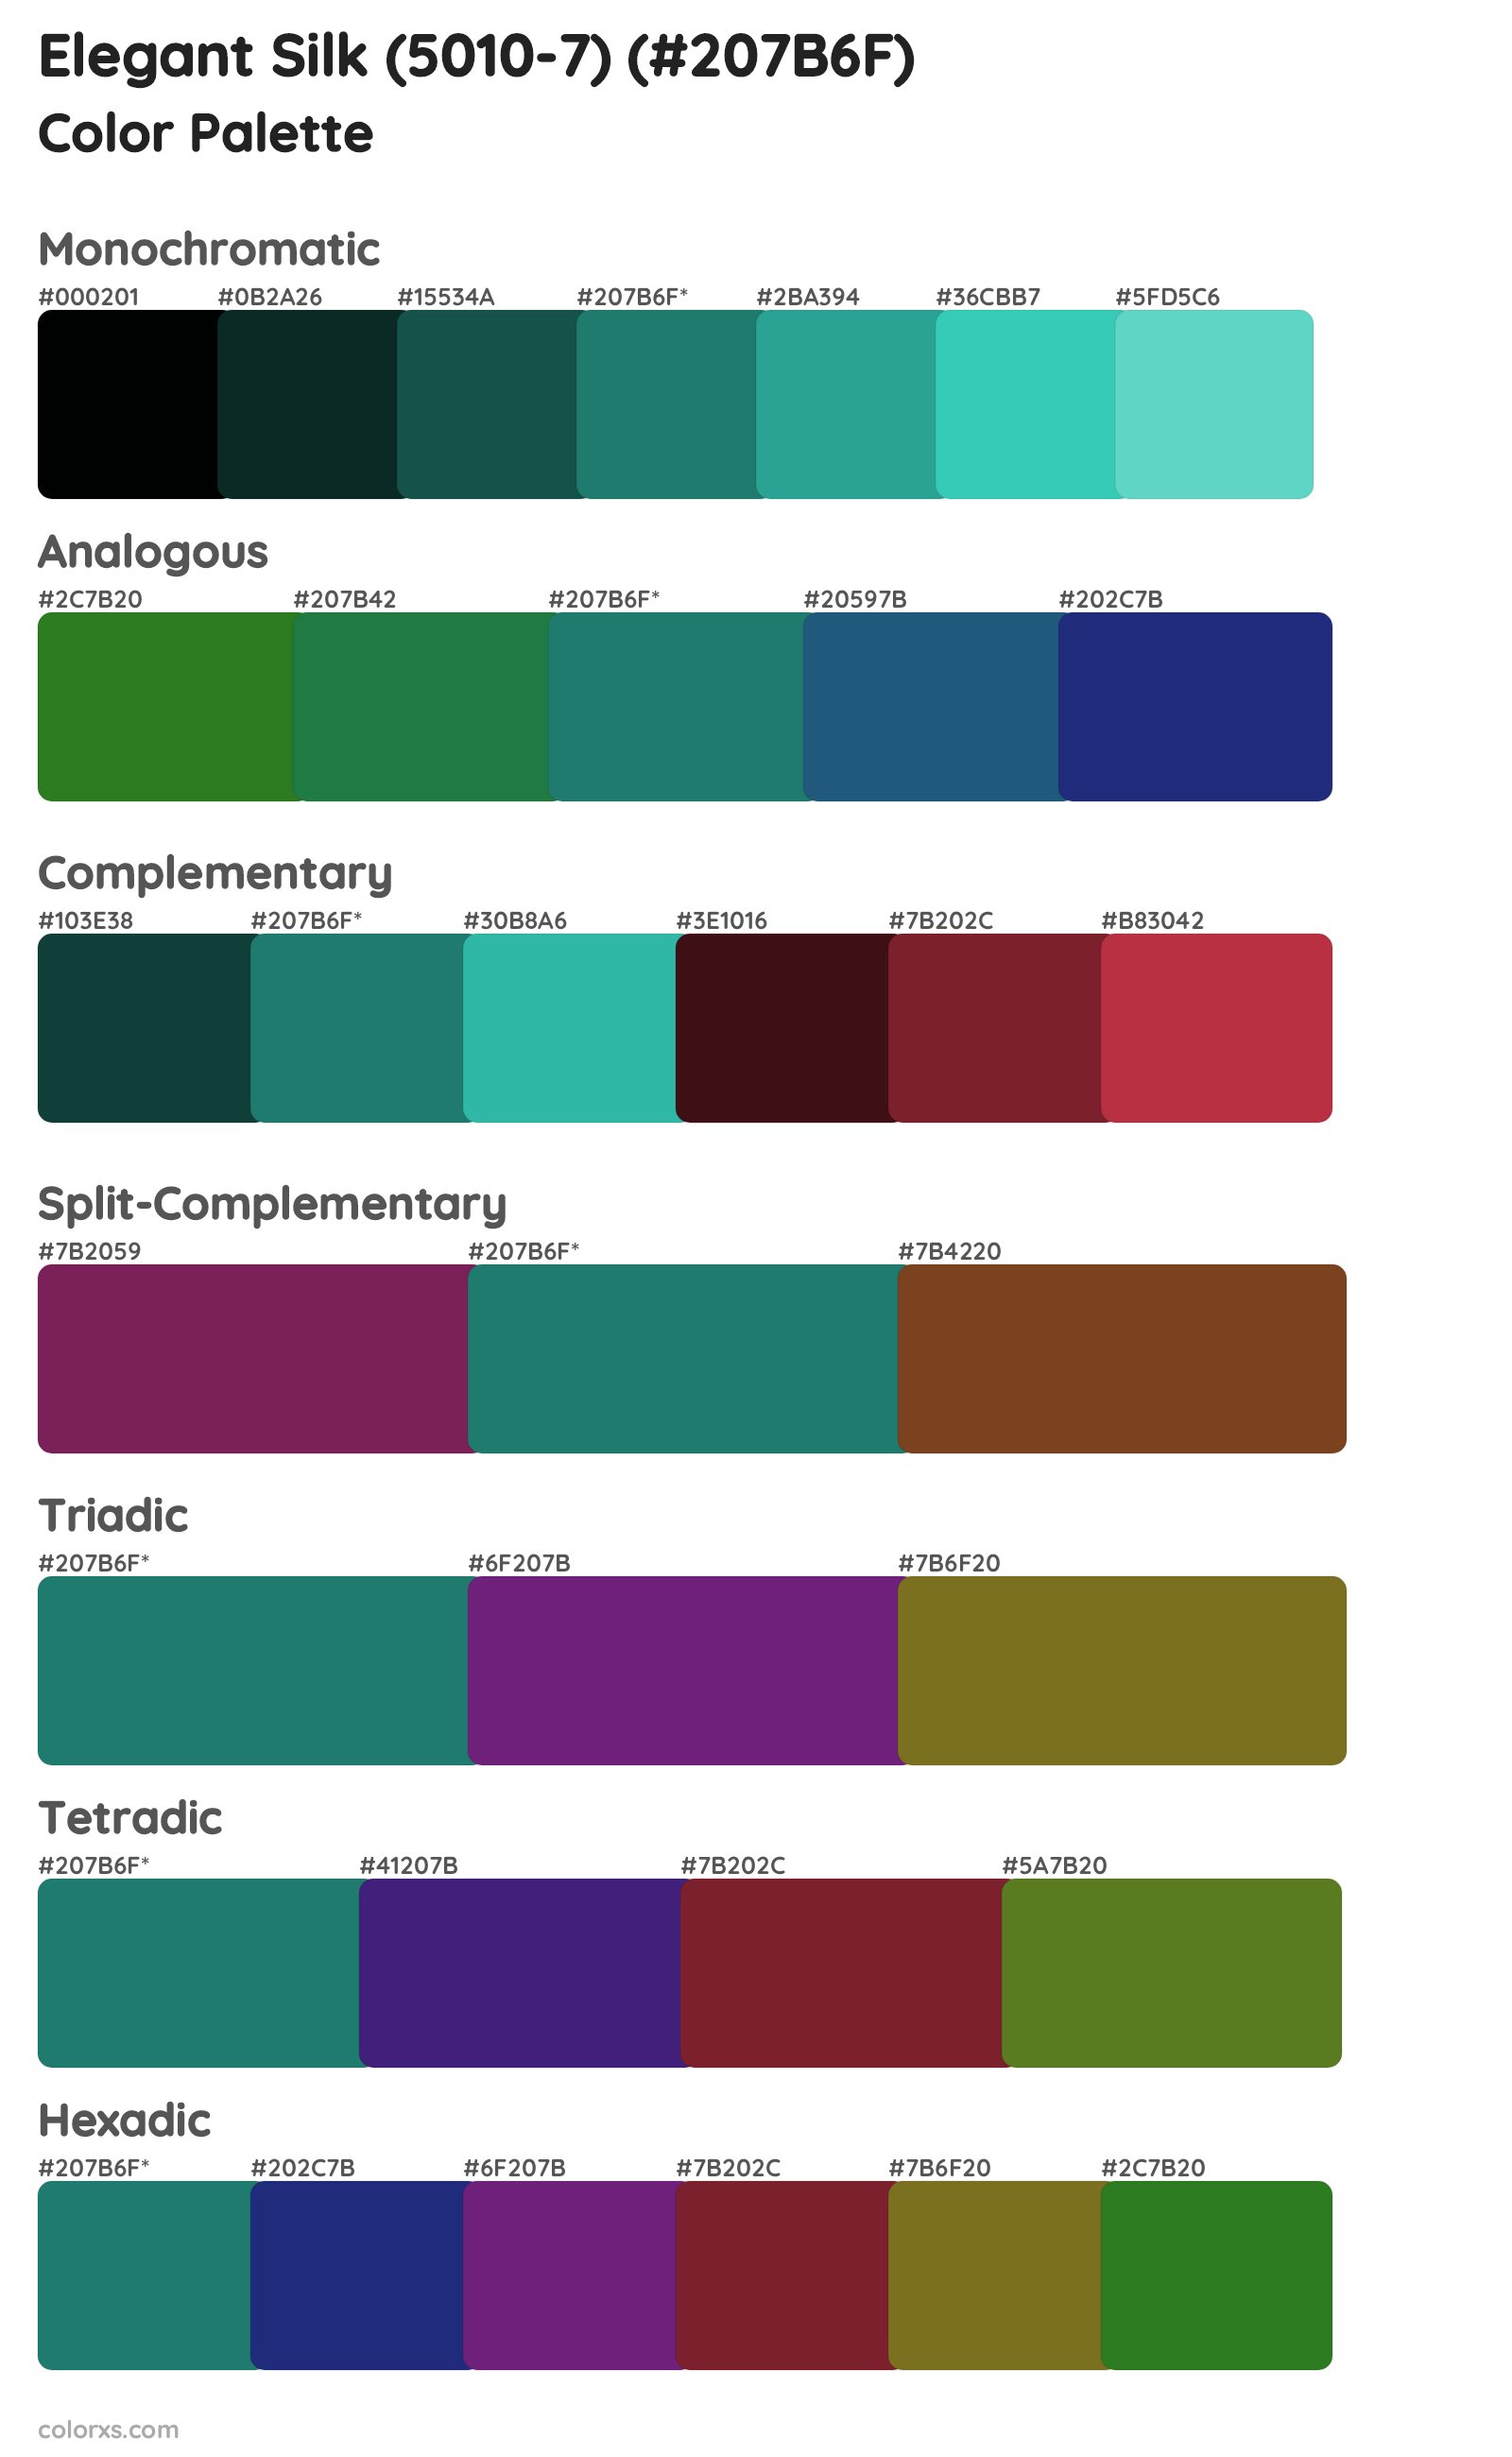 Elegant Silk (5010-7) Color Scheme Palettes